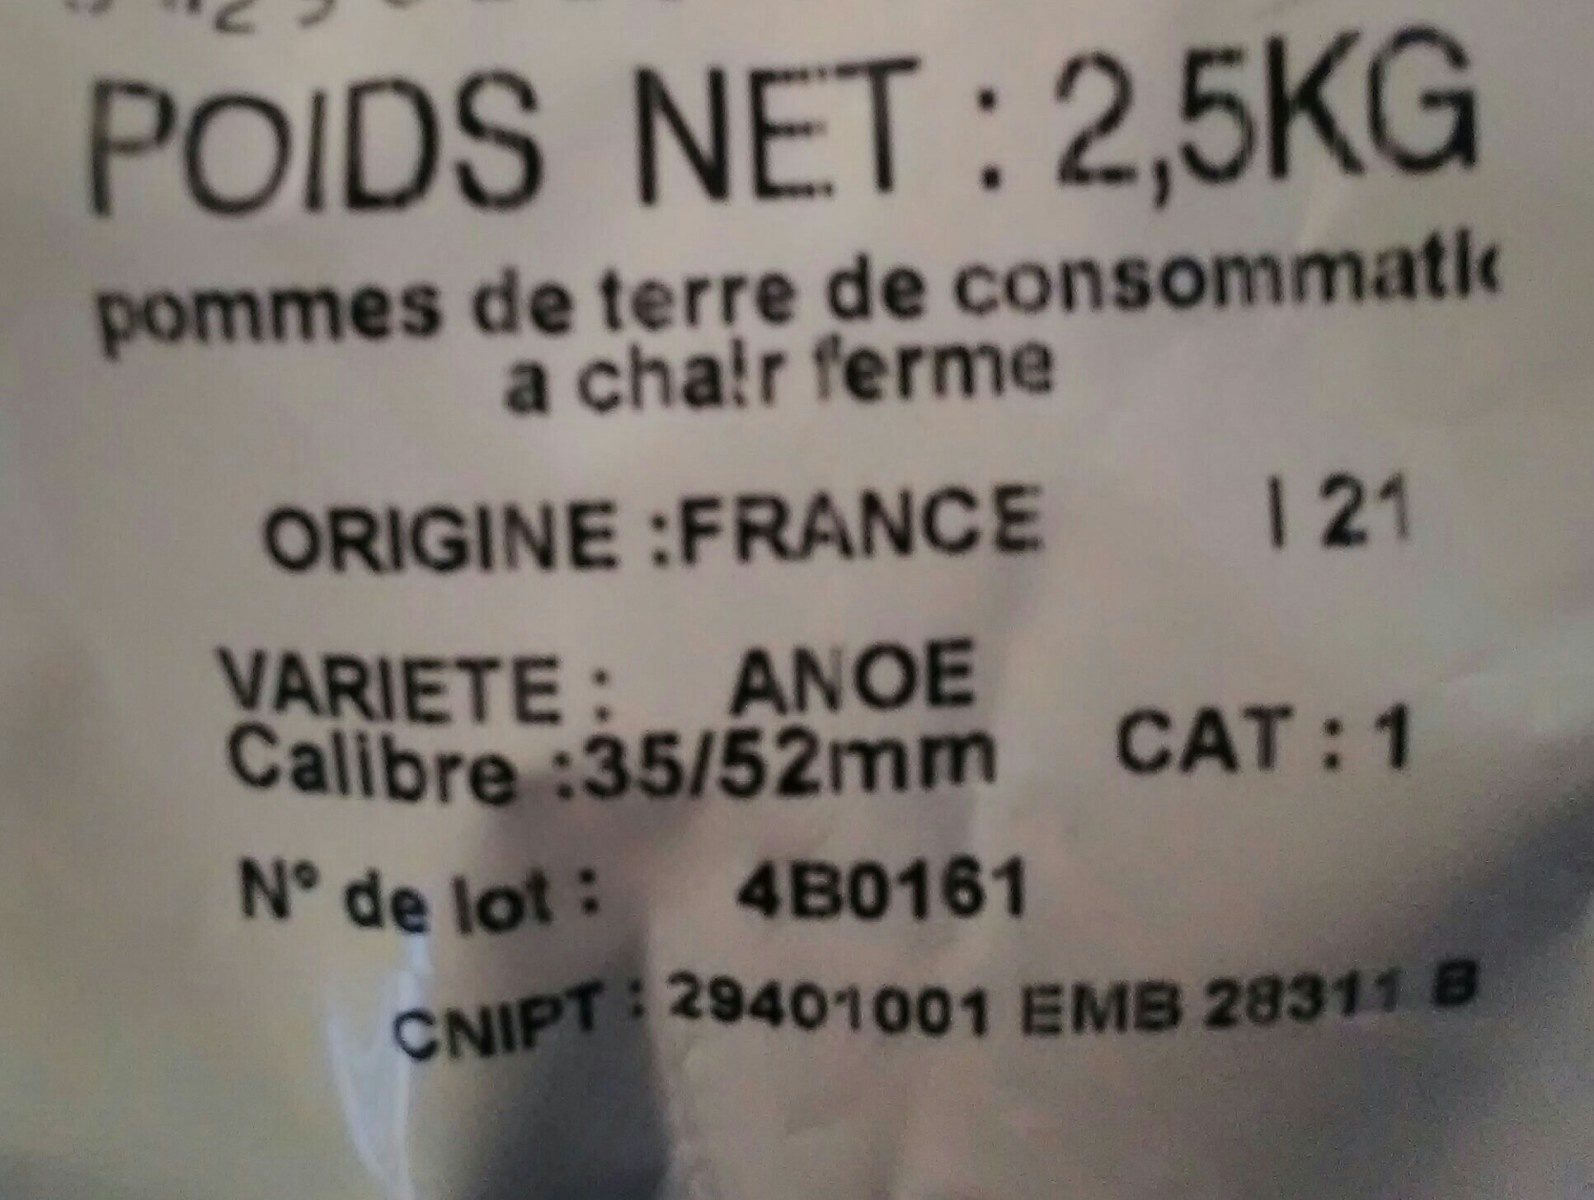 Pomme de terre Anoe, de consommation à chair ferme, calibre 35/55mm cat.1 - Ingredients - fr